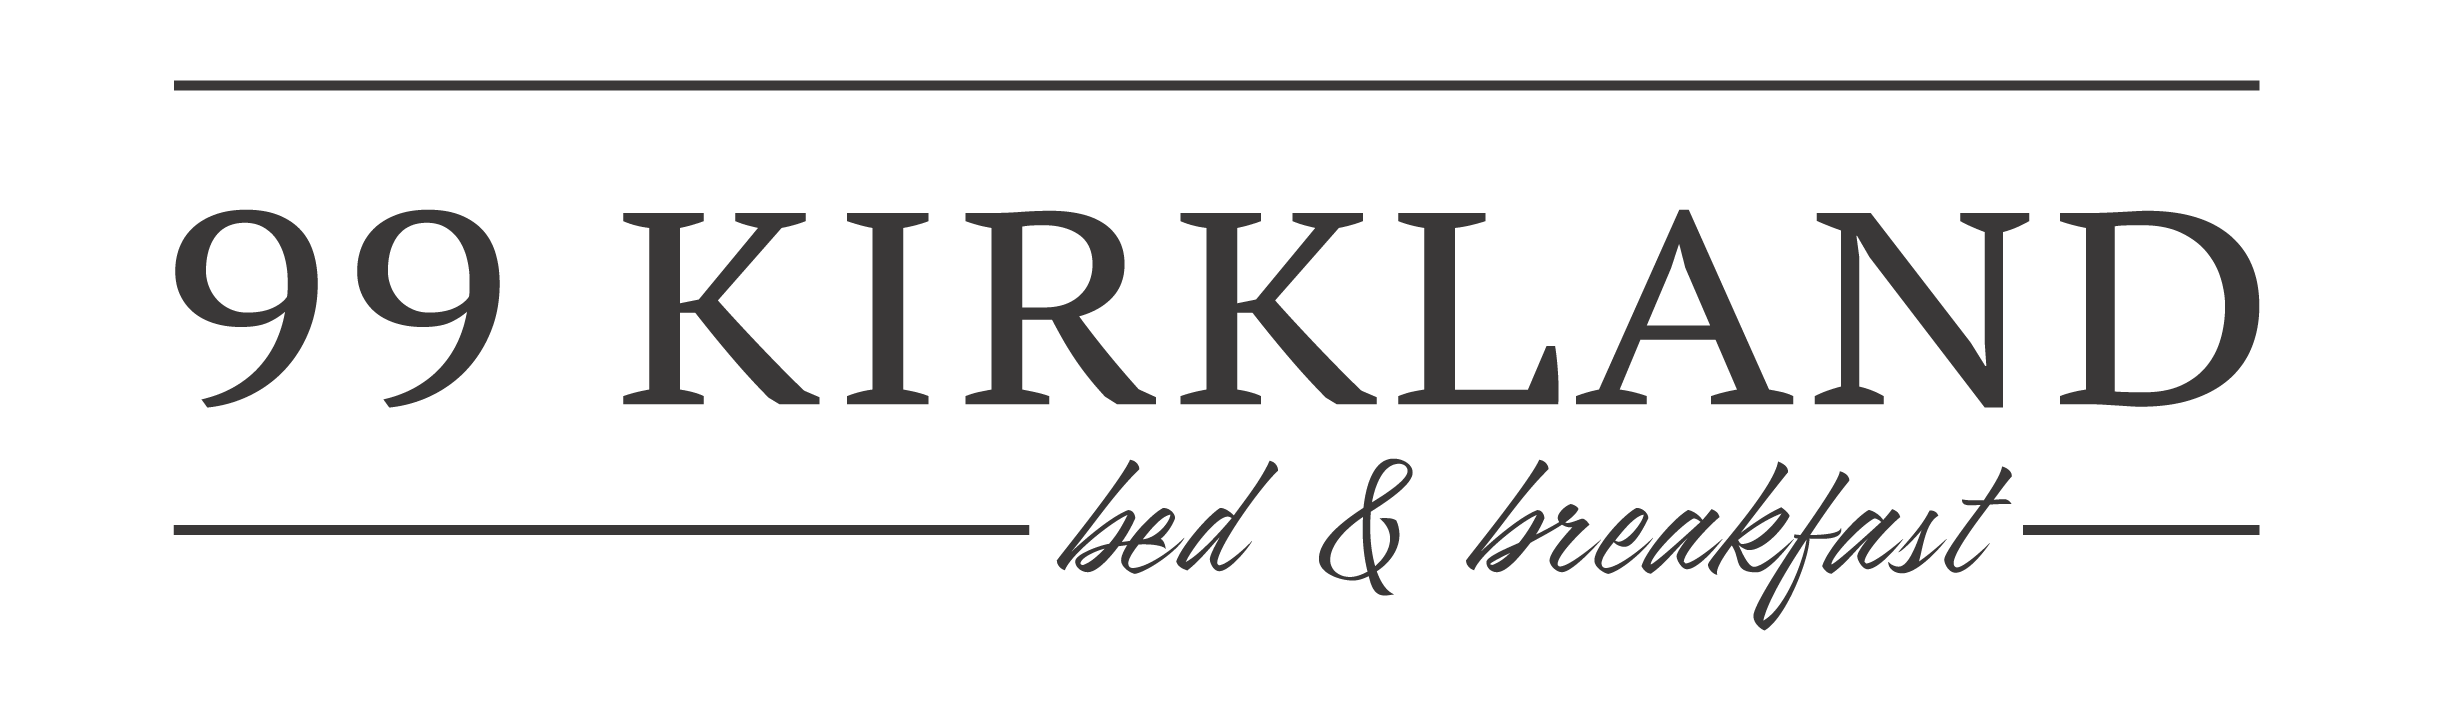 99 Kirkland Bed & Breakfast